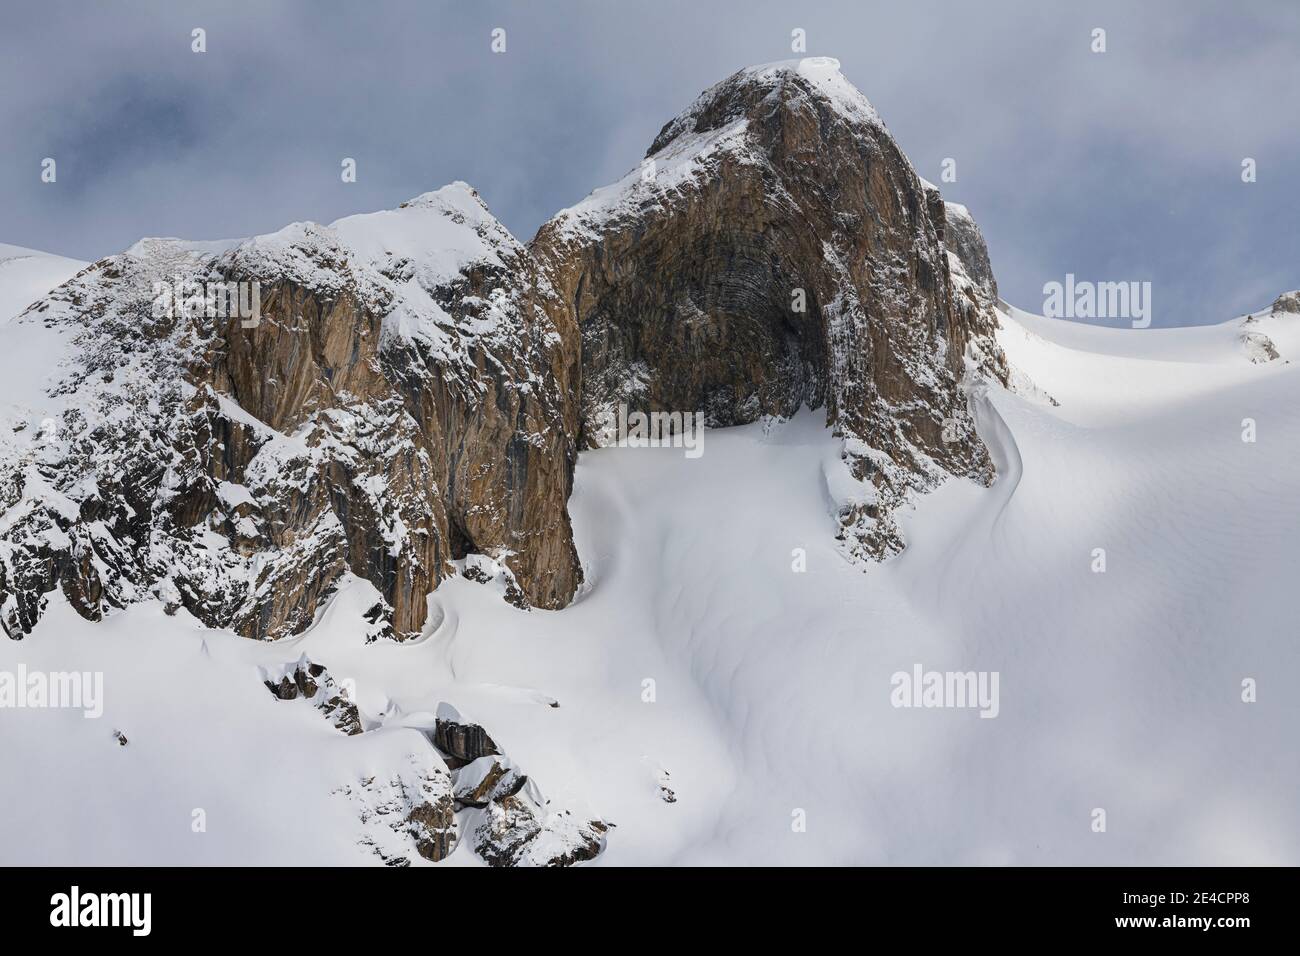 Svizzera, Graubünden, Samnaun, Austria, Tirolo, Ischgl, formazione rocciosa all'Alp Trida Foto Stock